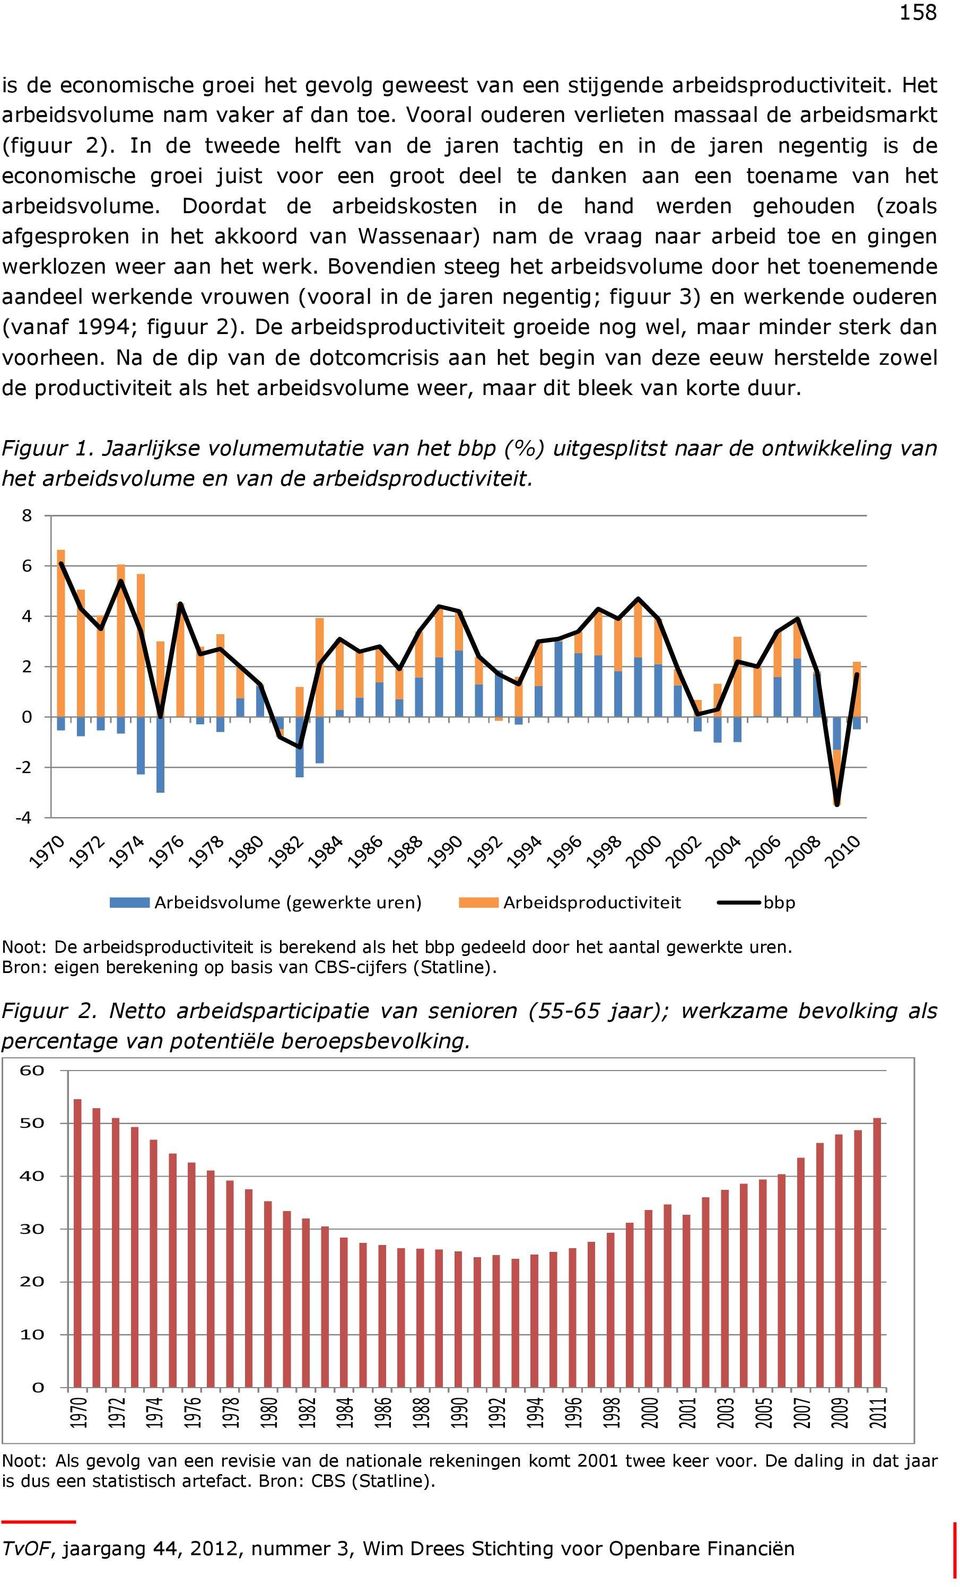 Doordat de arbeidskosten in de hand werden gehouden (zoals afgesproken in het akkoord van Wassenaar) nam de vraag naar arbeid toe en gingen werklozen weer aan het werk.